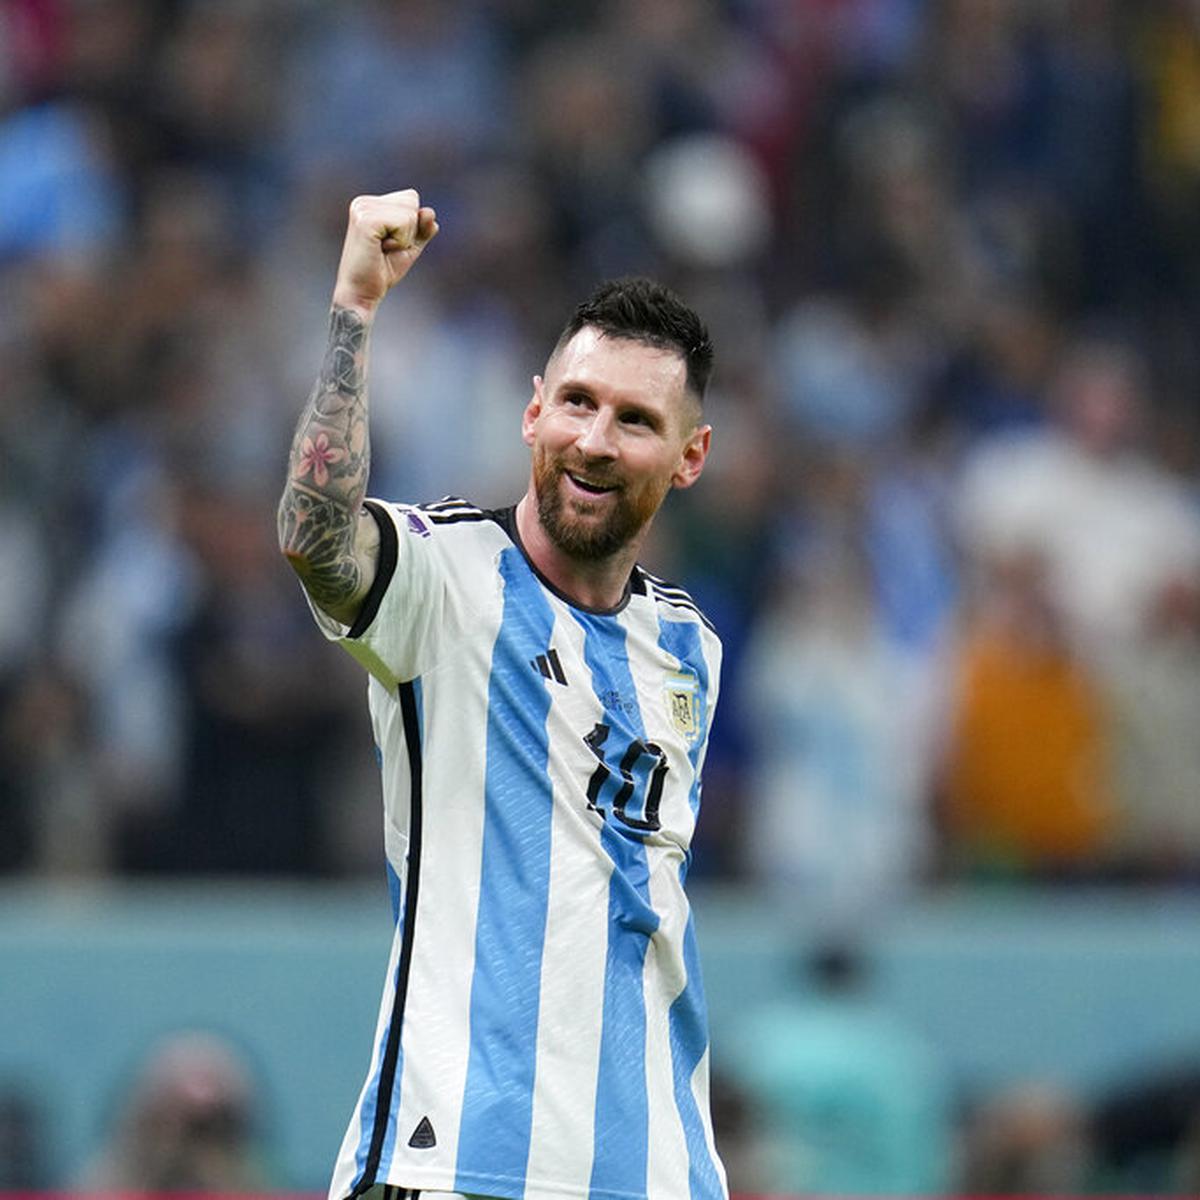 La extraña camiseta de Messi que se vende en Arabia Saudita - El Economista